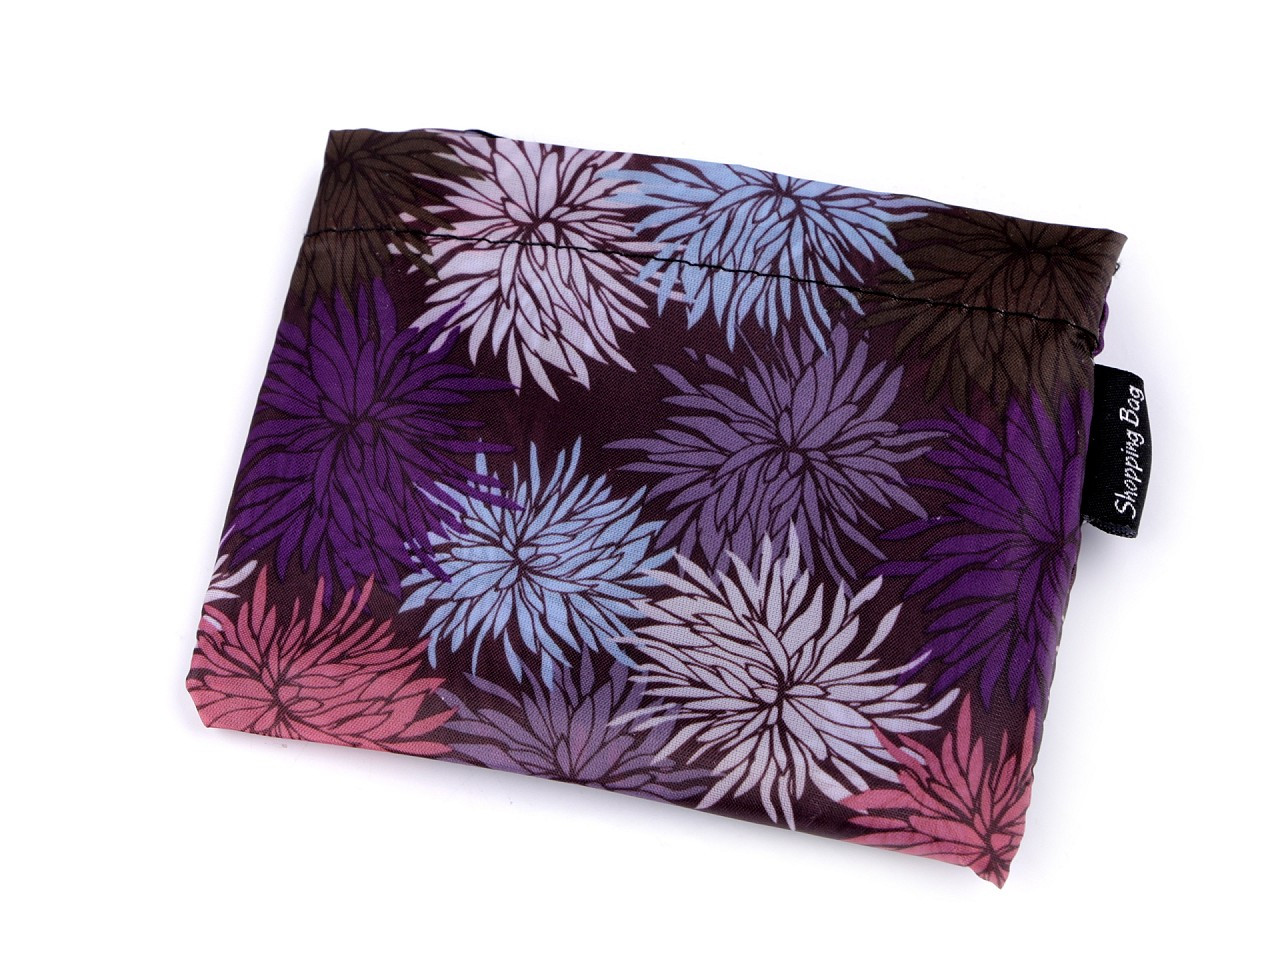 Skládací nákupní taška 37x44 cm, barva 19 fialová květy střapaté